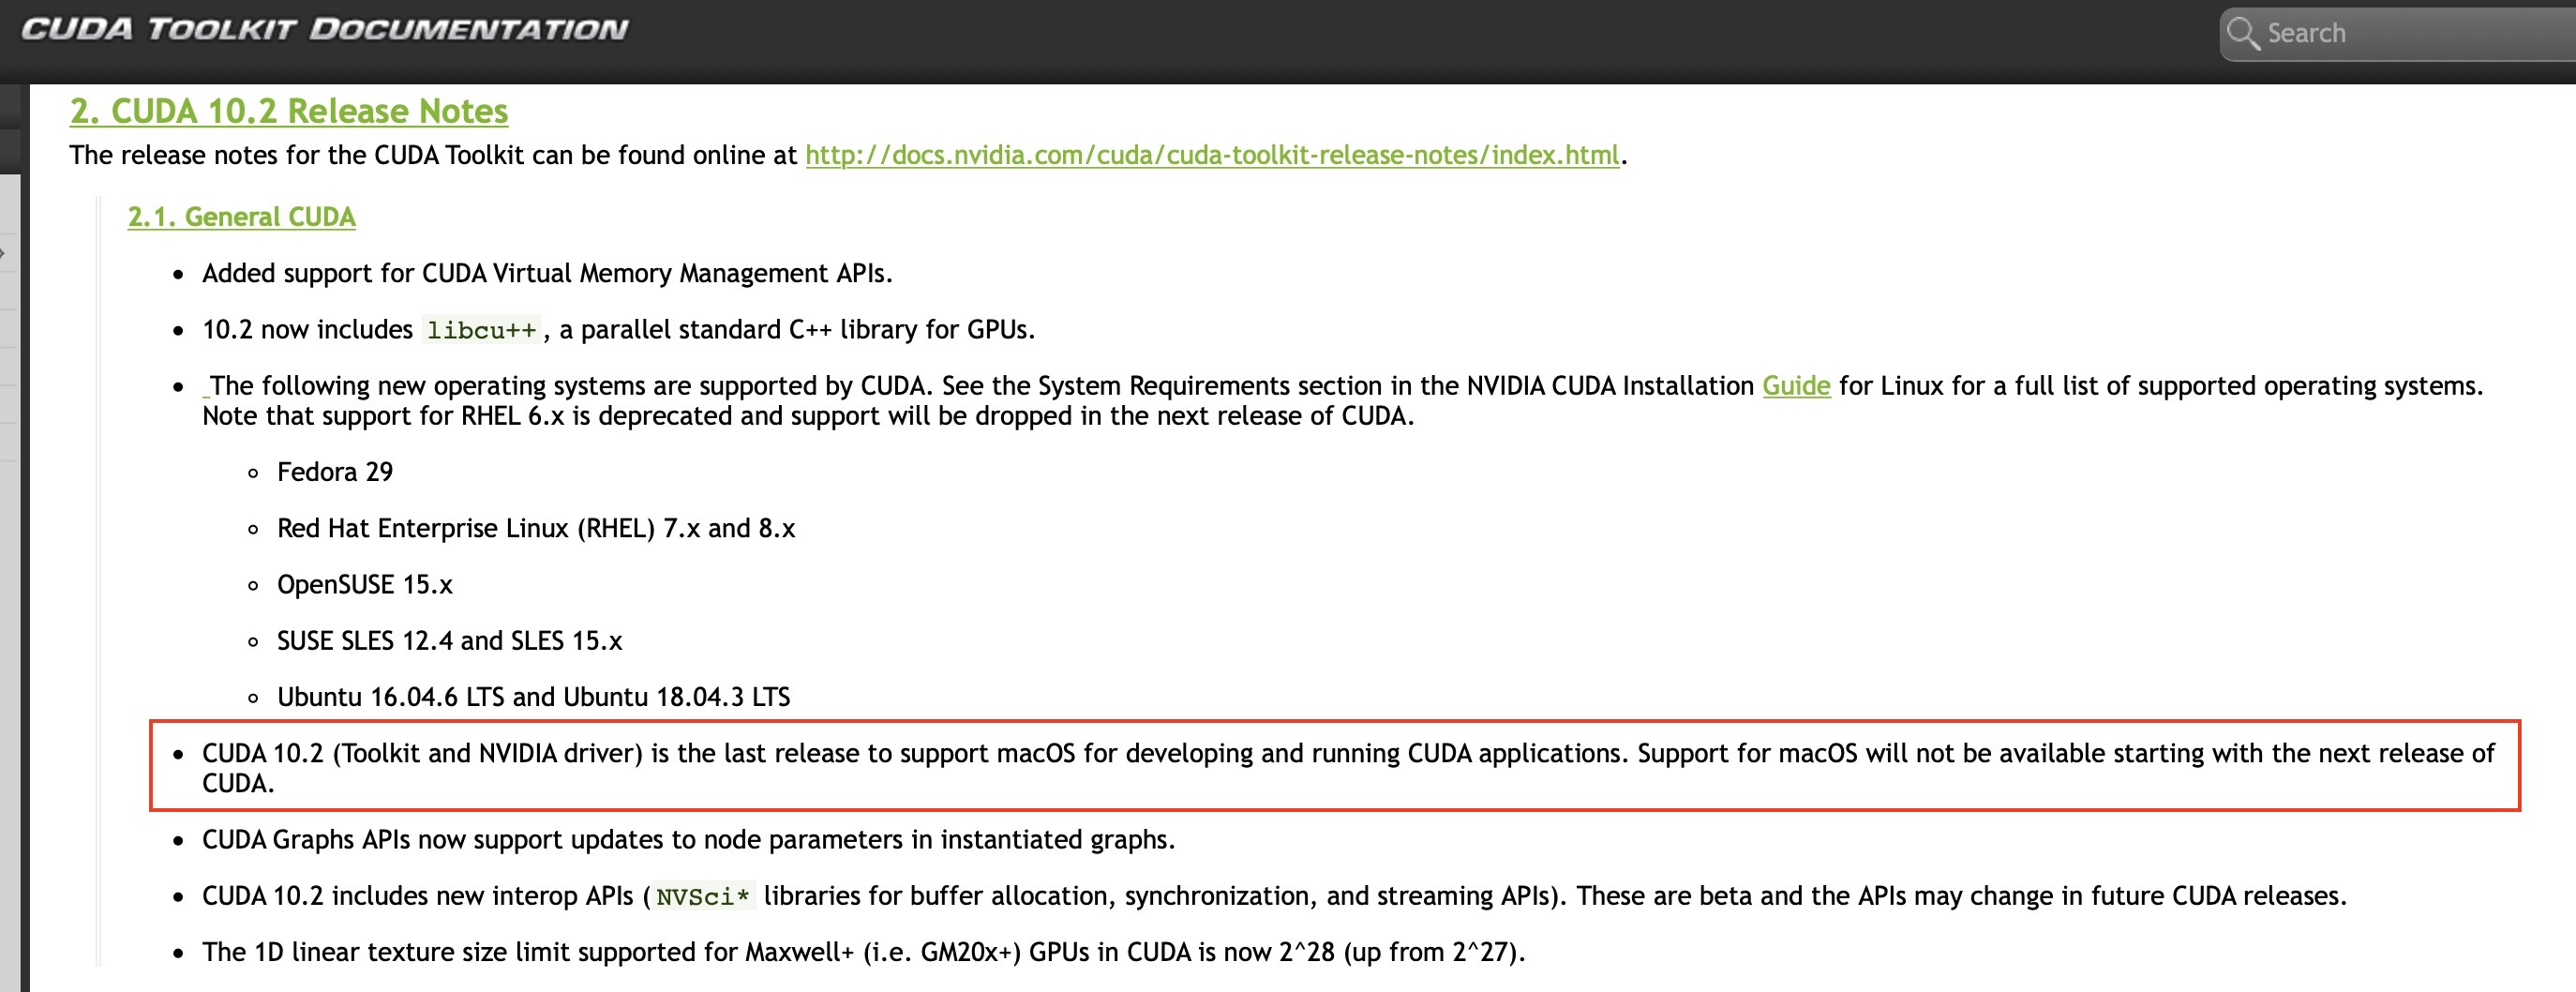 英伟达宣布停止维护用于Mac的CUDA驱动